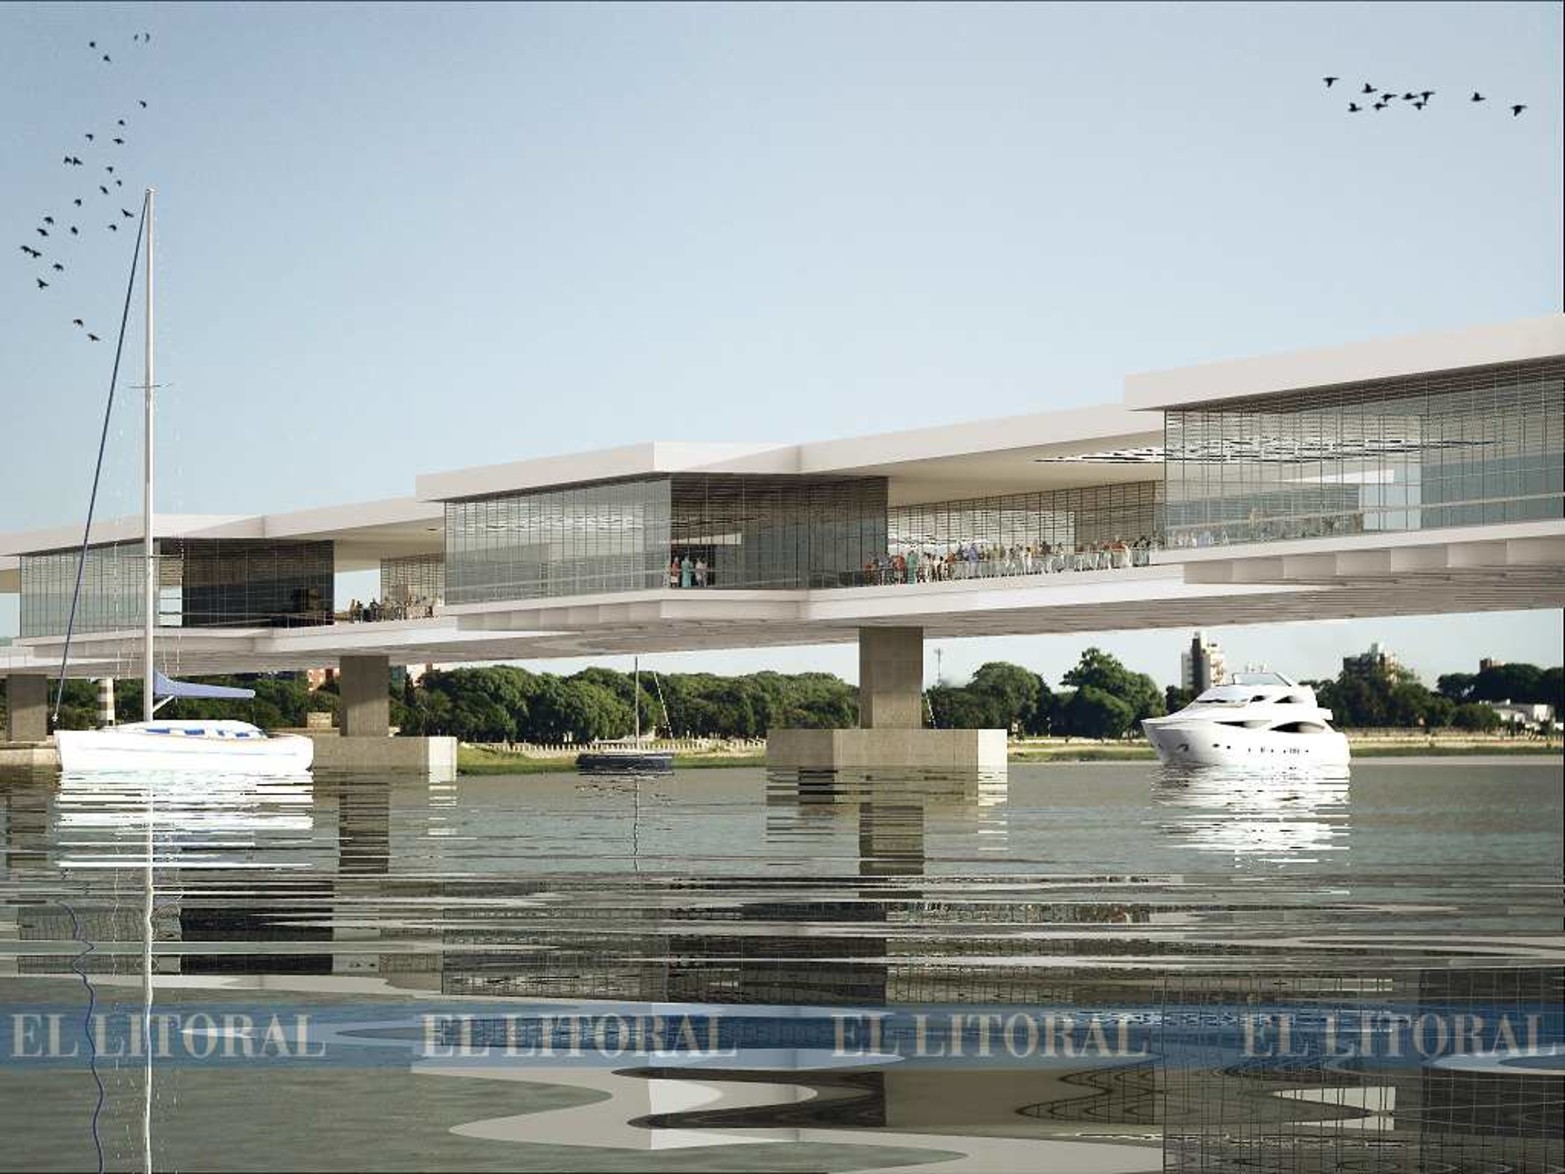 Polo comercial y cultural. En el 2013, el comerciante Manuel Montaño y el arquitecto Raúl Comuzzi planificaron el centro comercial Espejos de la Setúbal para conectar las dos costaneras.